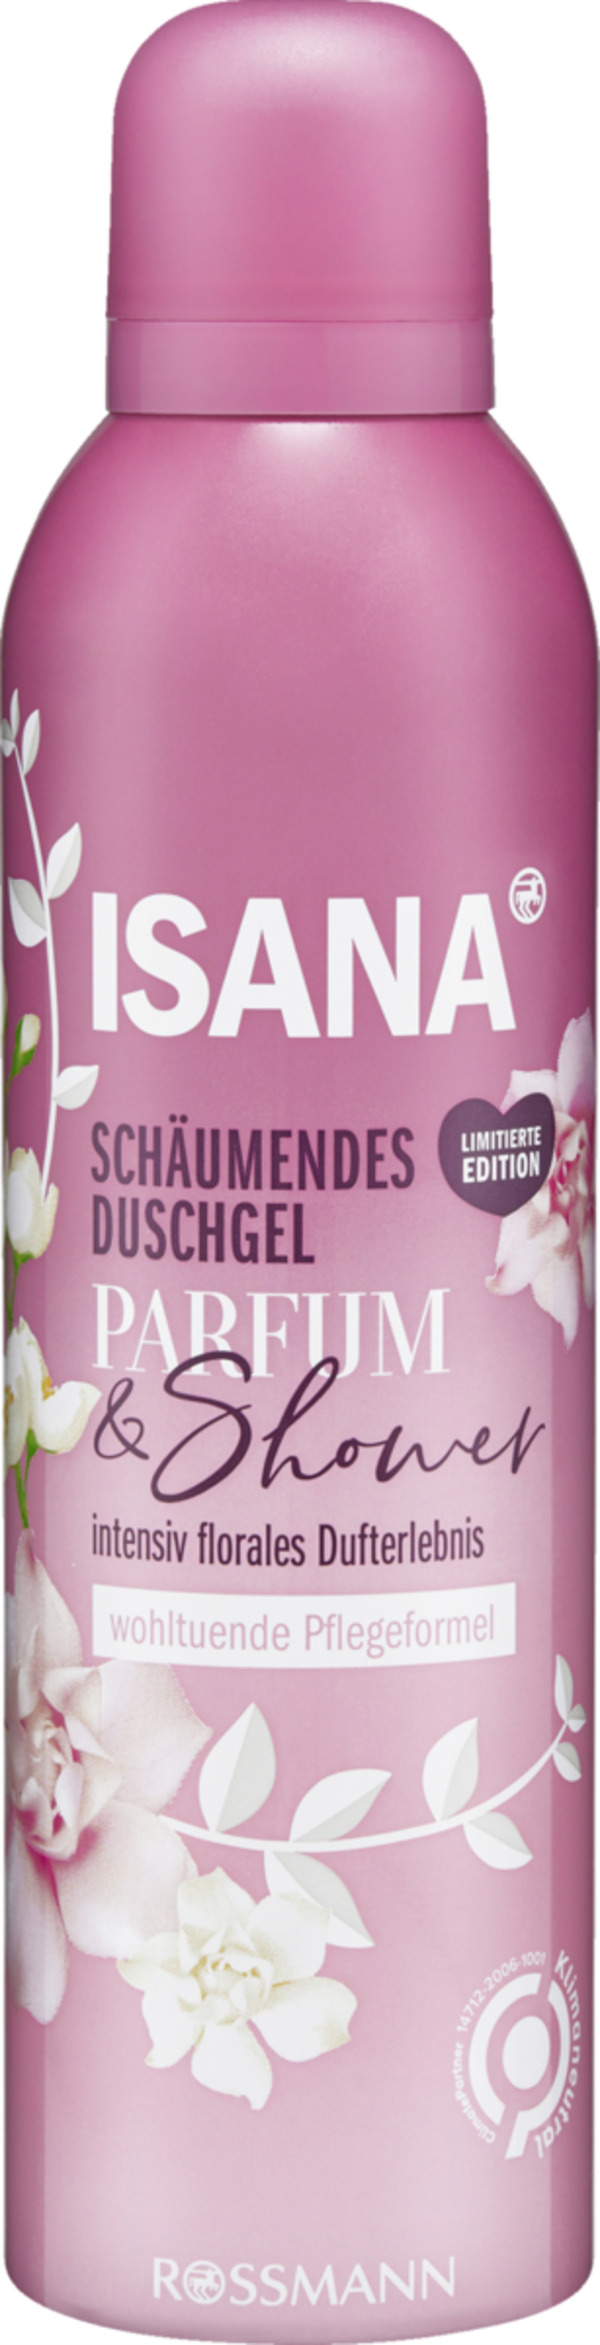 Bild 1 von ISANA Schäumendes Duschgel Parfum & Shower